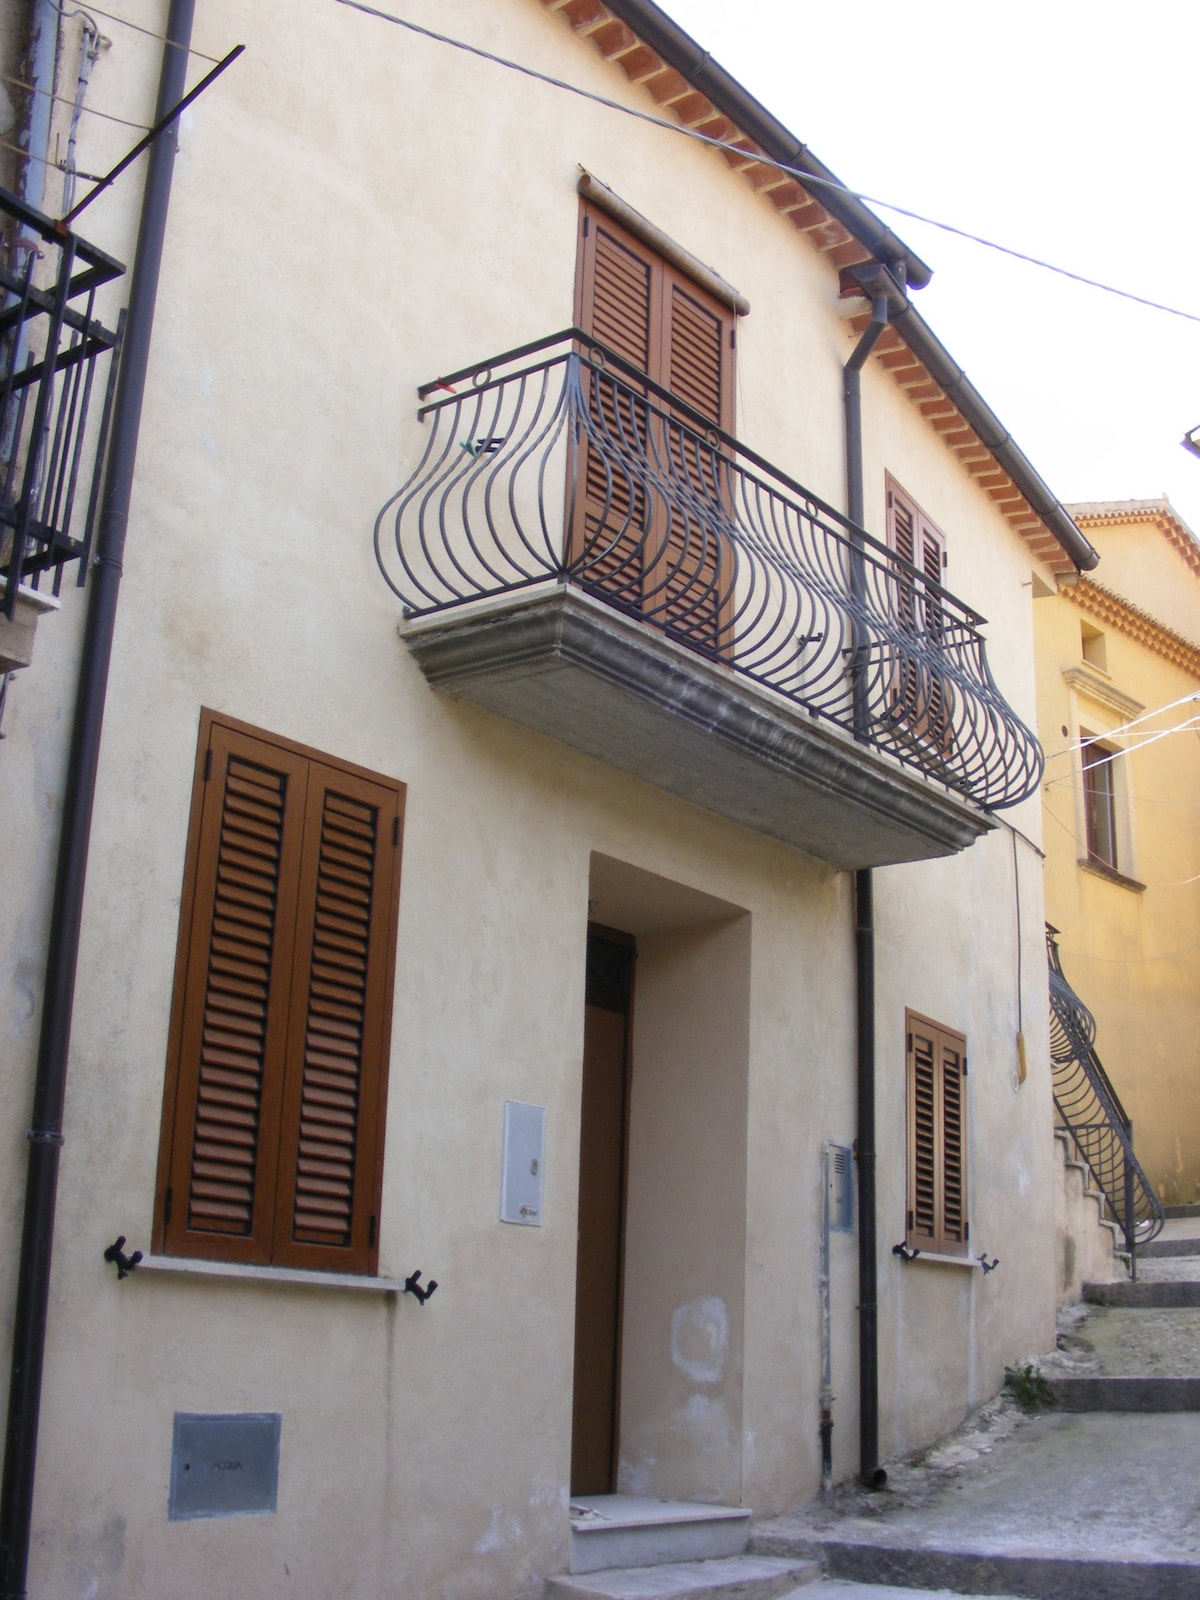 Antico Borgo - Via Middeo, 25